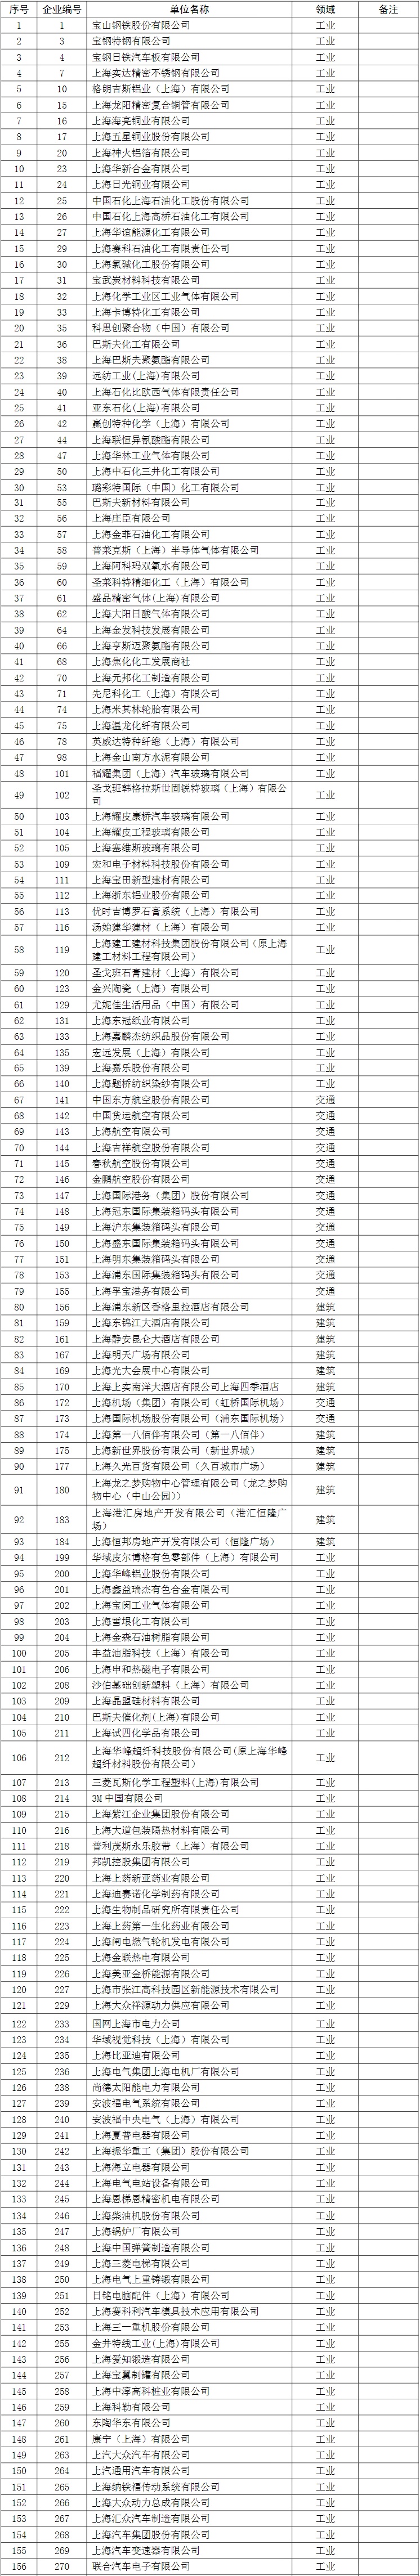 上海市纳入碳排放配额管理单位名单.jpg